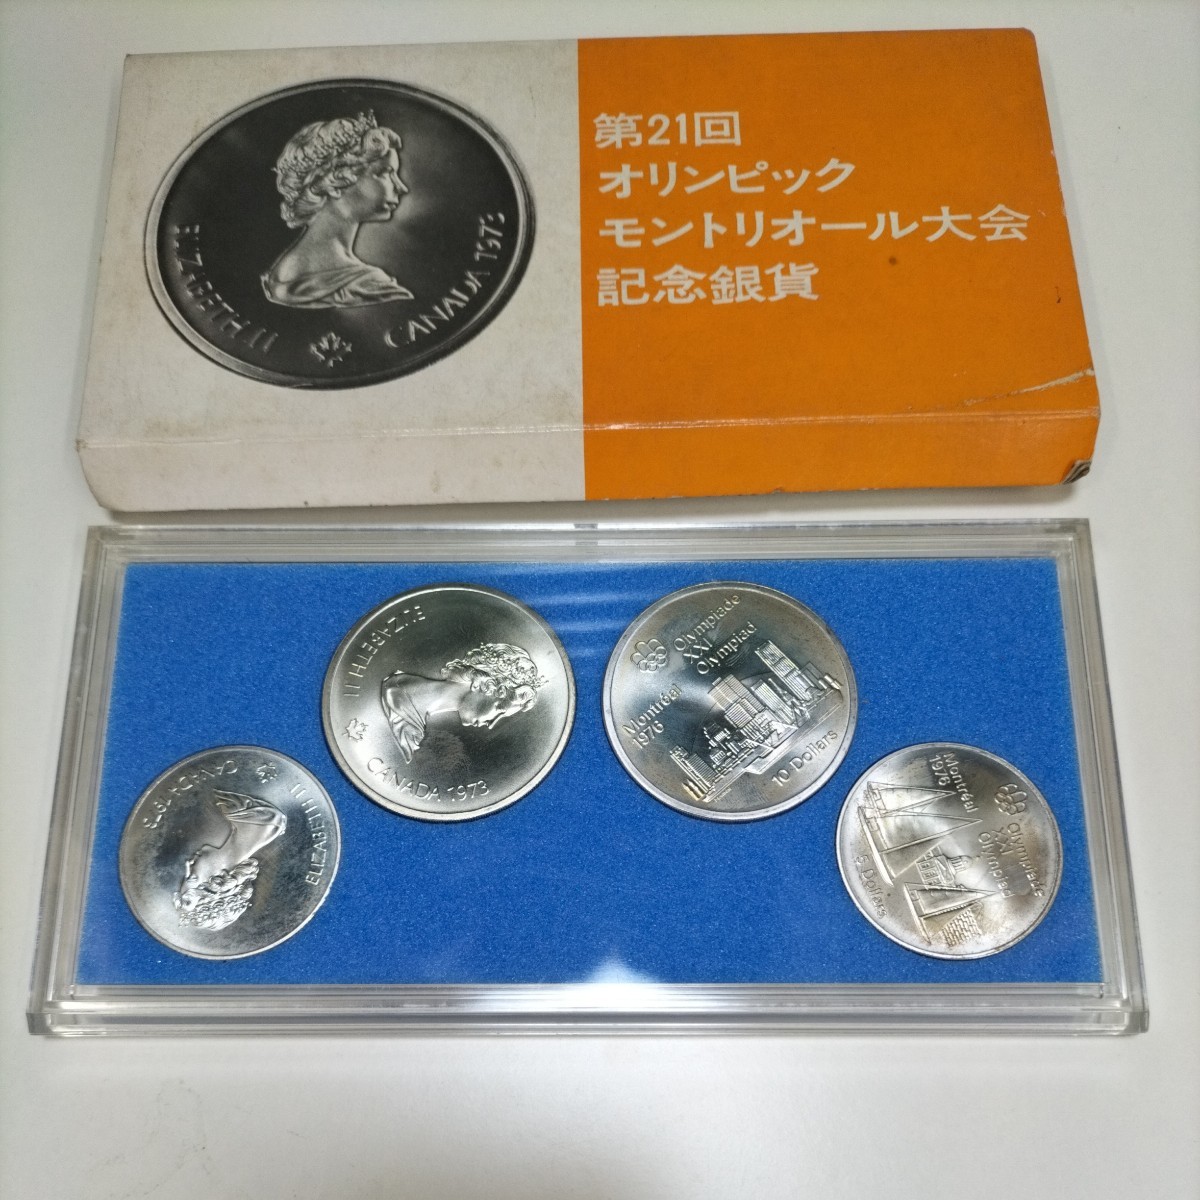 Yahoo!オークション -「モントリオールオリンピック記念硬貨」の落札 